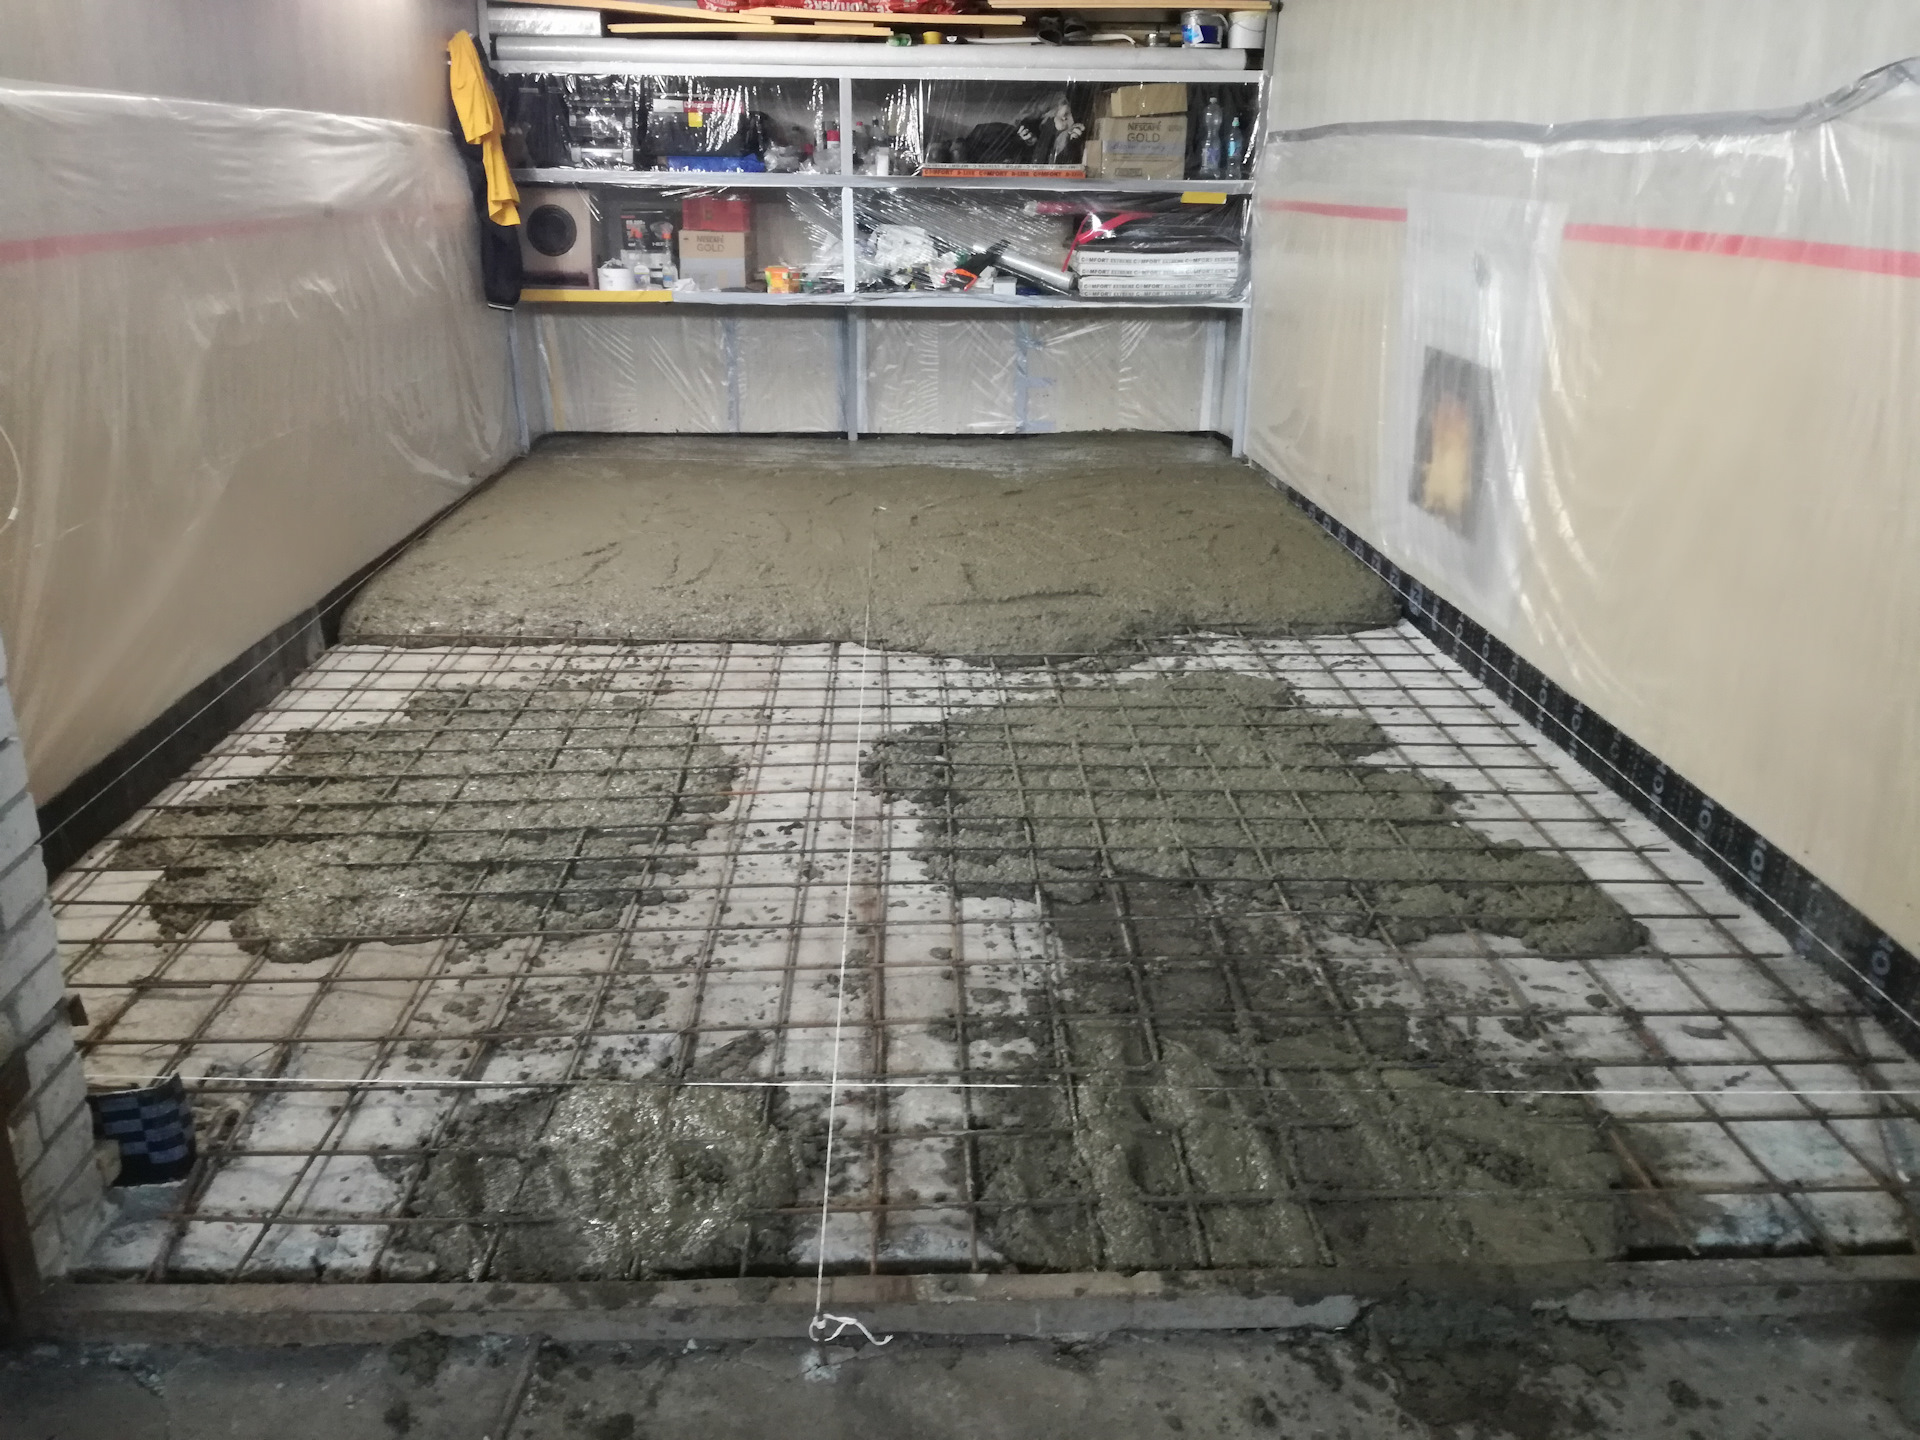 Как залить пол в гараже: тонкости и нюансы бетонирования